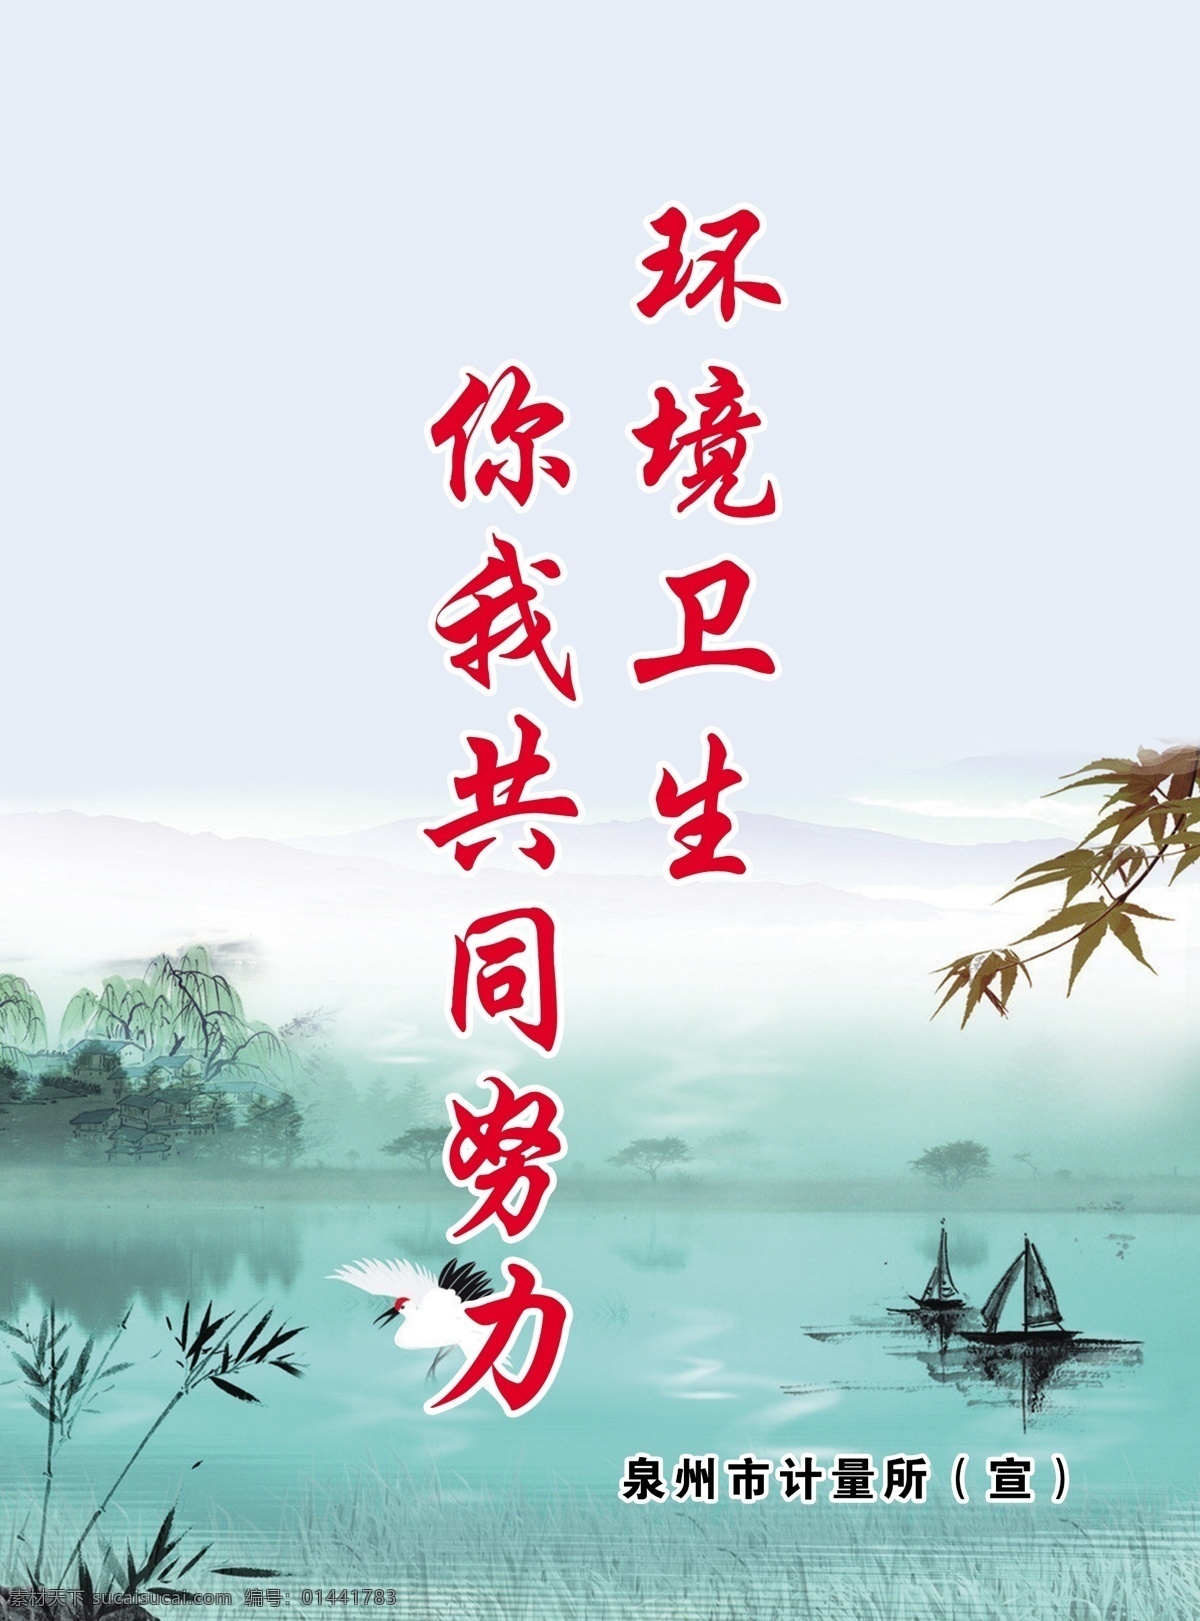 环境卫生标语 环境卫生 你我共同努力 中国风 浅色背景 竹子 河水 蓝色的 复古风 展板模板 广告设计模板 源文件